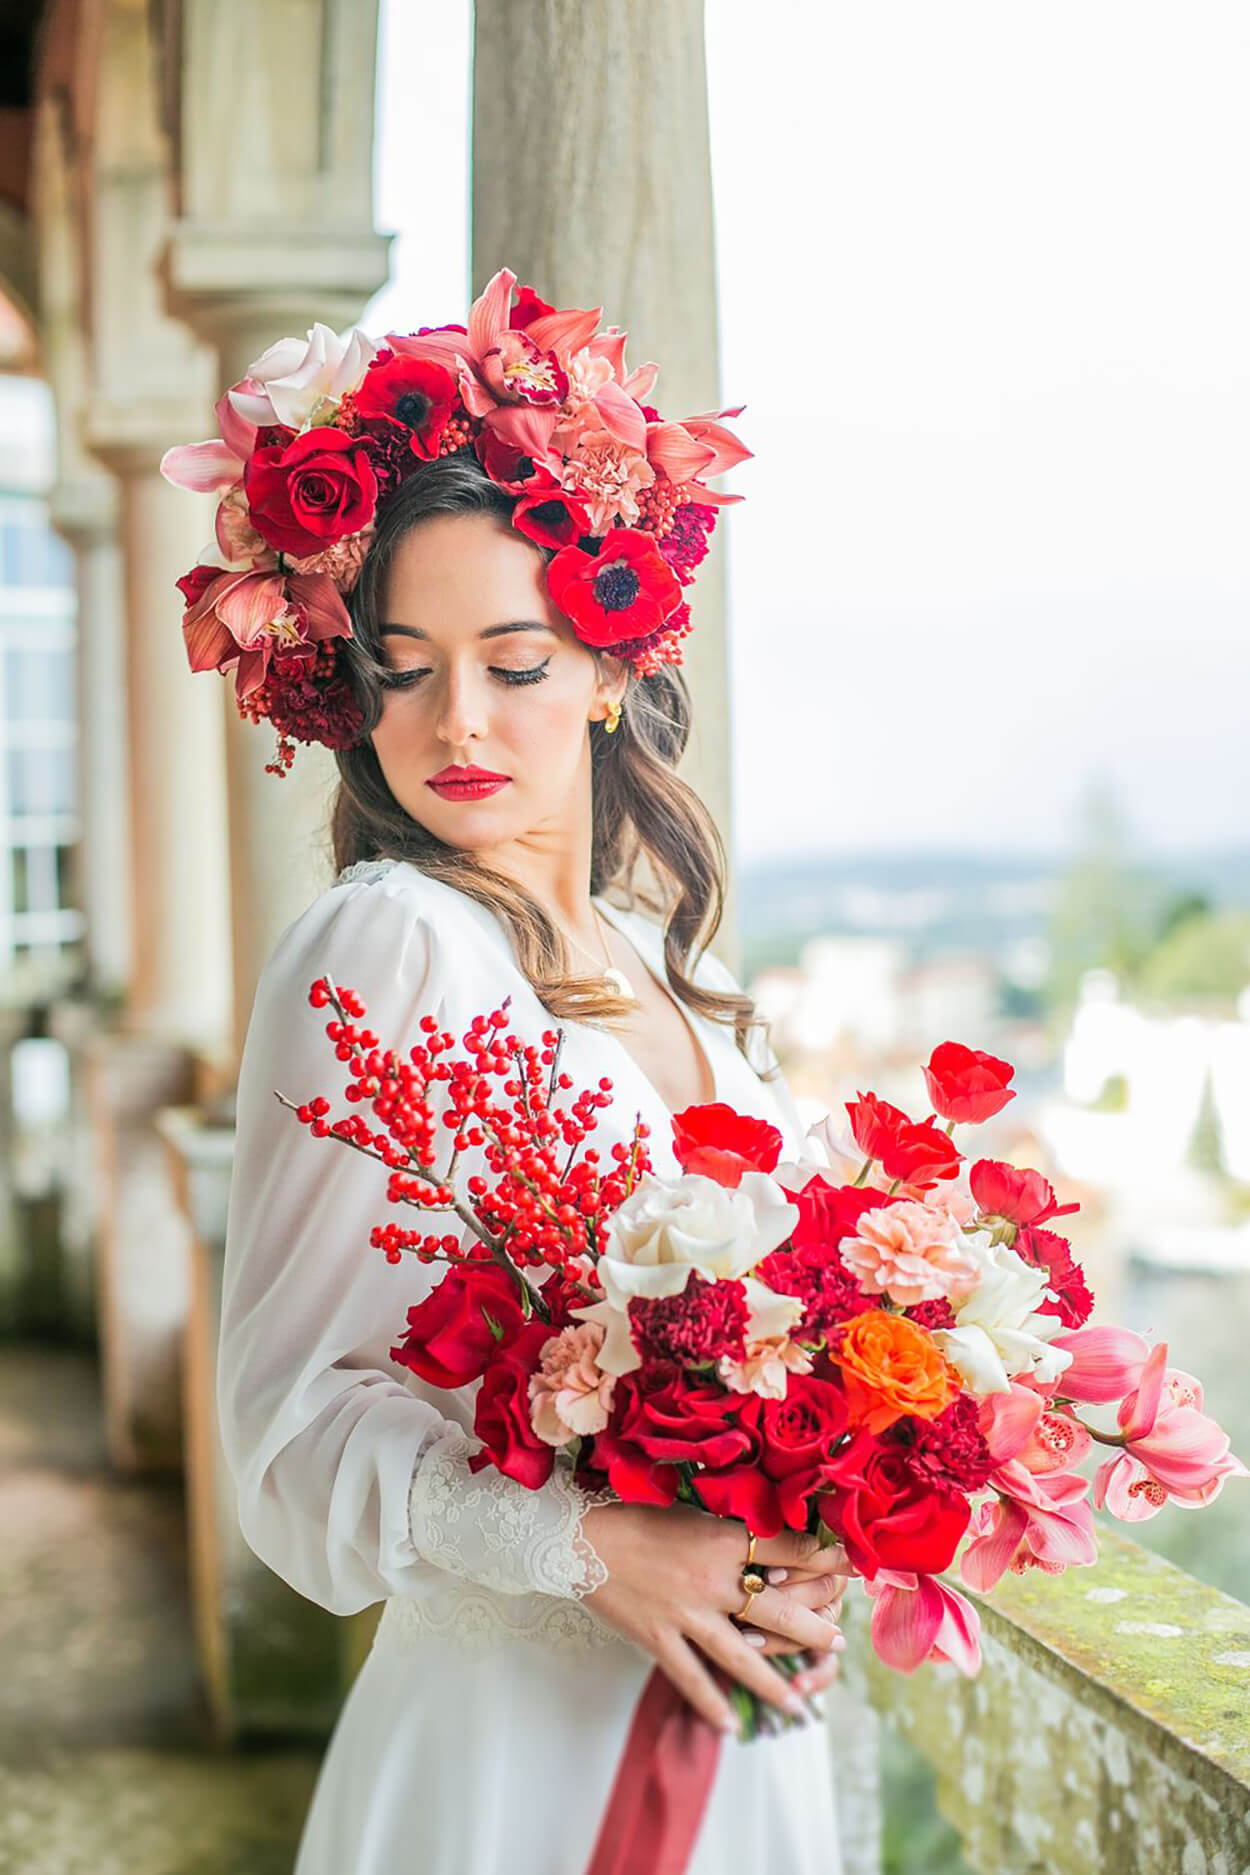 Noiva com coroa de flores veremelhas e buquê com flores brancas, laranajs e vermelhas